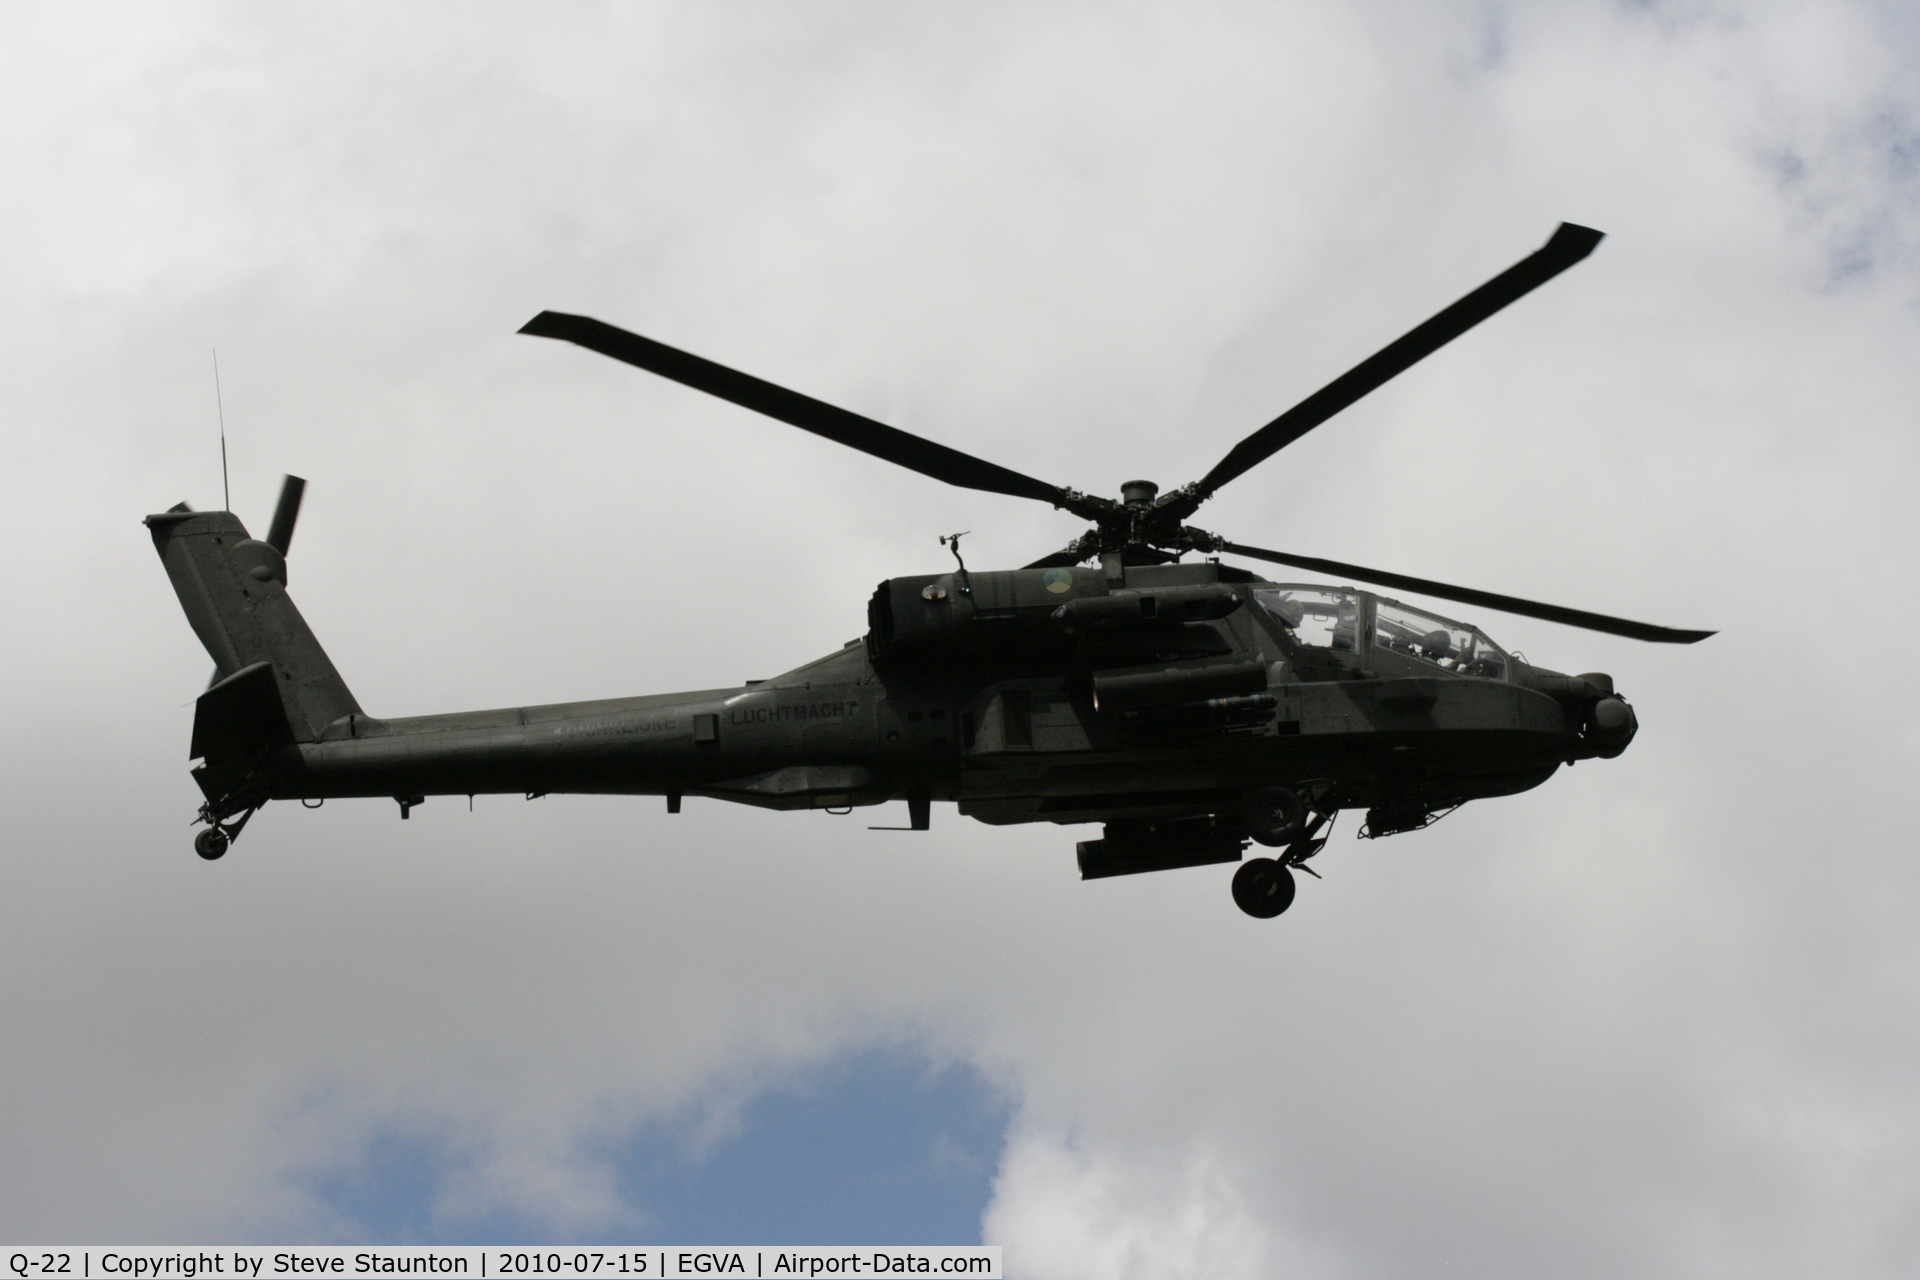 Q-22, Boeing AH-64DN Apache C/N DN022, Taken at the Royal International Air Tattoo 2010